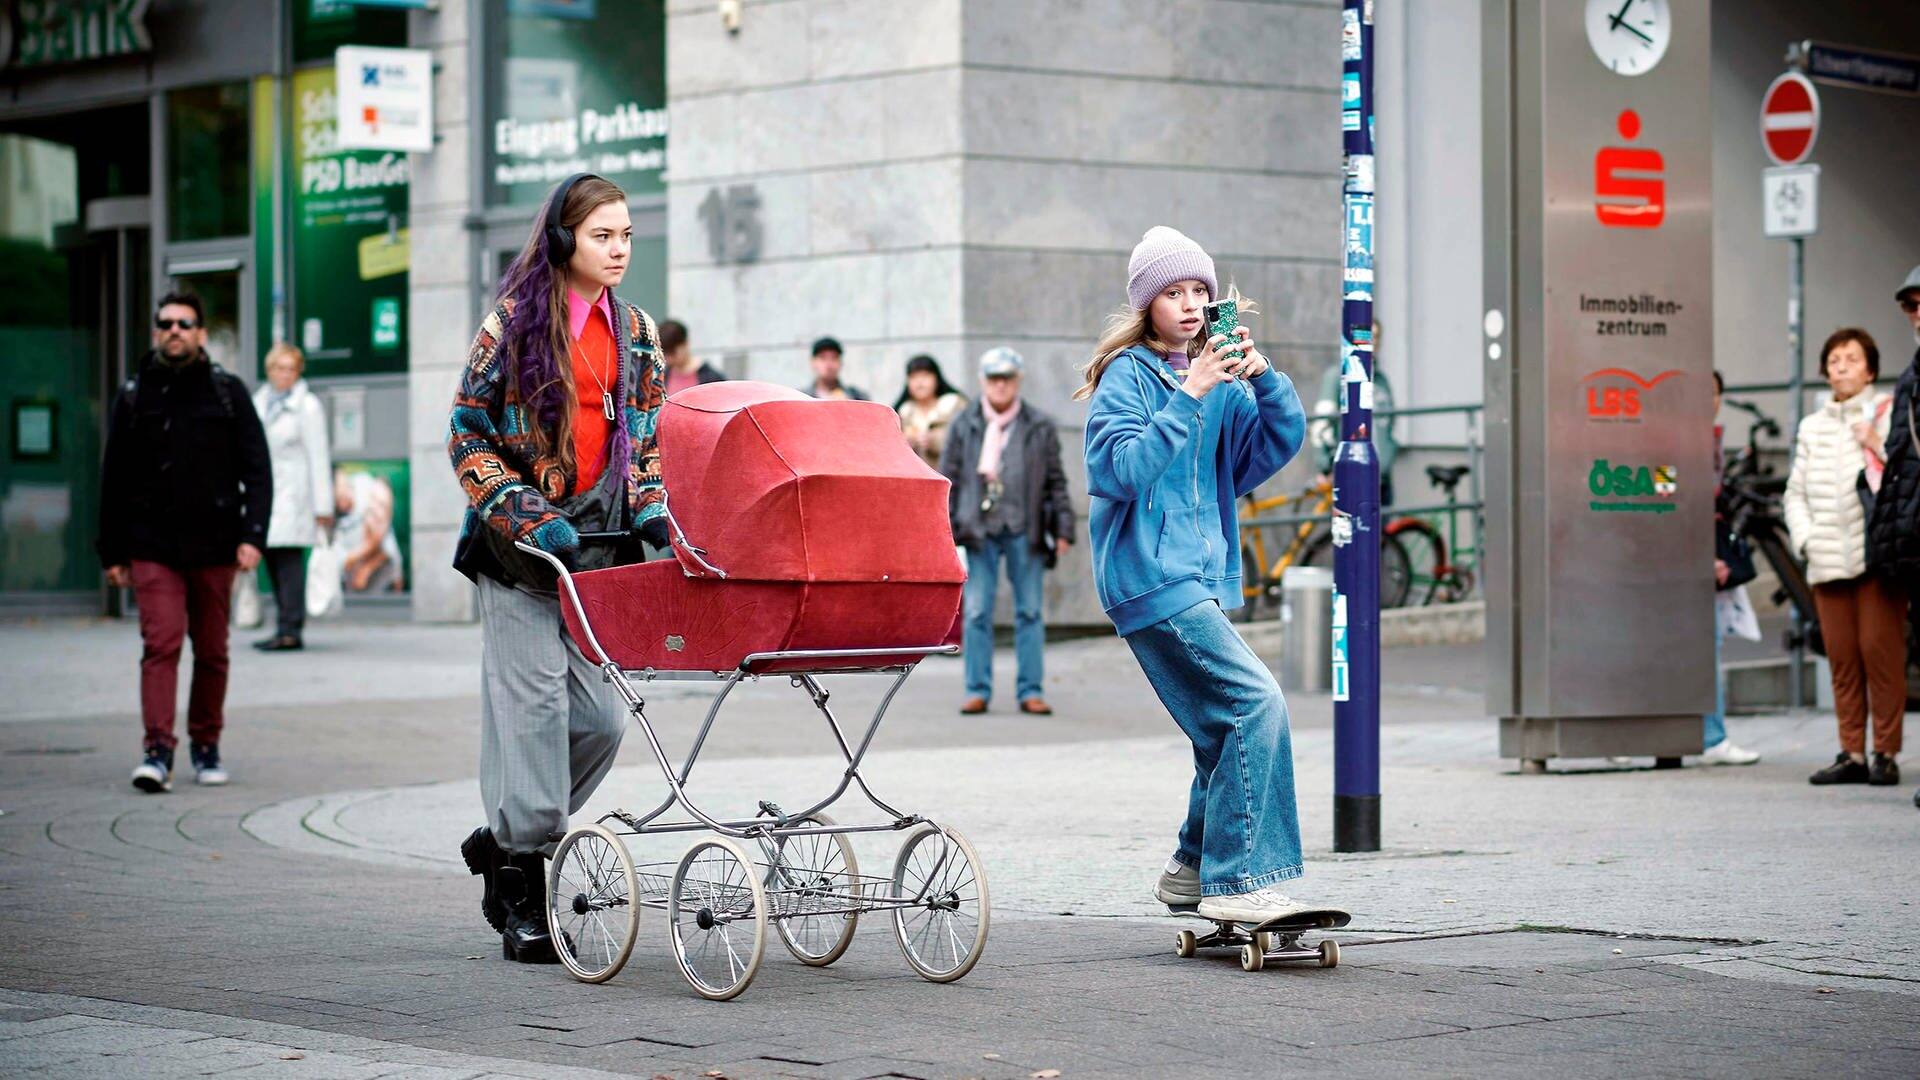 Polizeiruf-Kritik Magdeburg mit Brasch: Lana Stokowsky mit Kinderwagen in der Stadt. Vor ihr ein Mädchen auf einem Skateboard. (Foto: ard-foto s2-intern/extern, MDR / Felix Abraham)